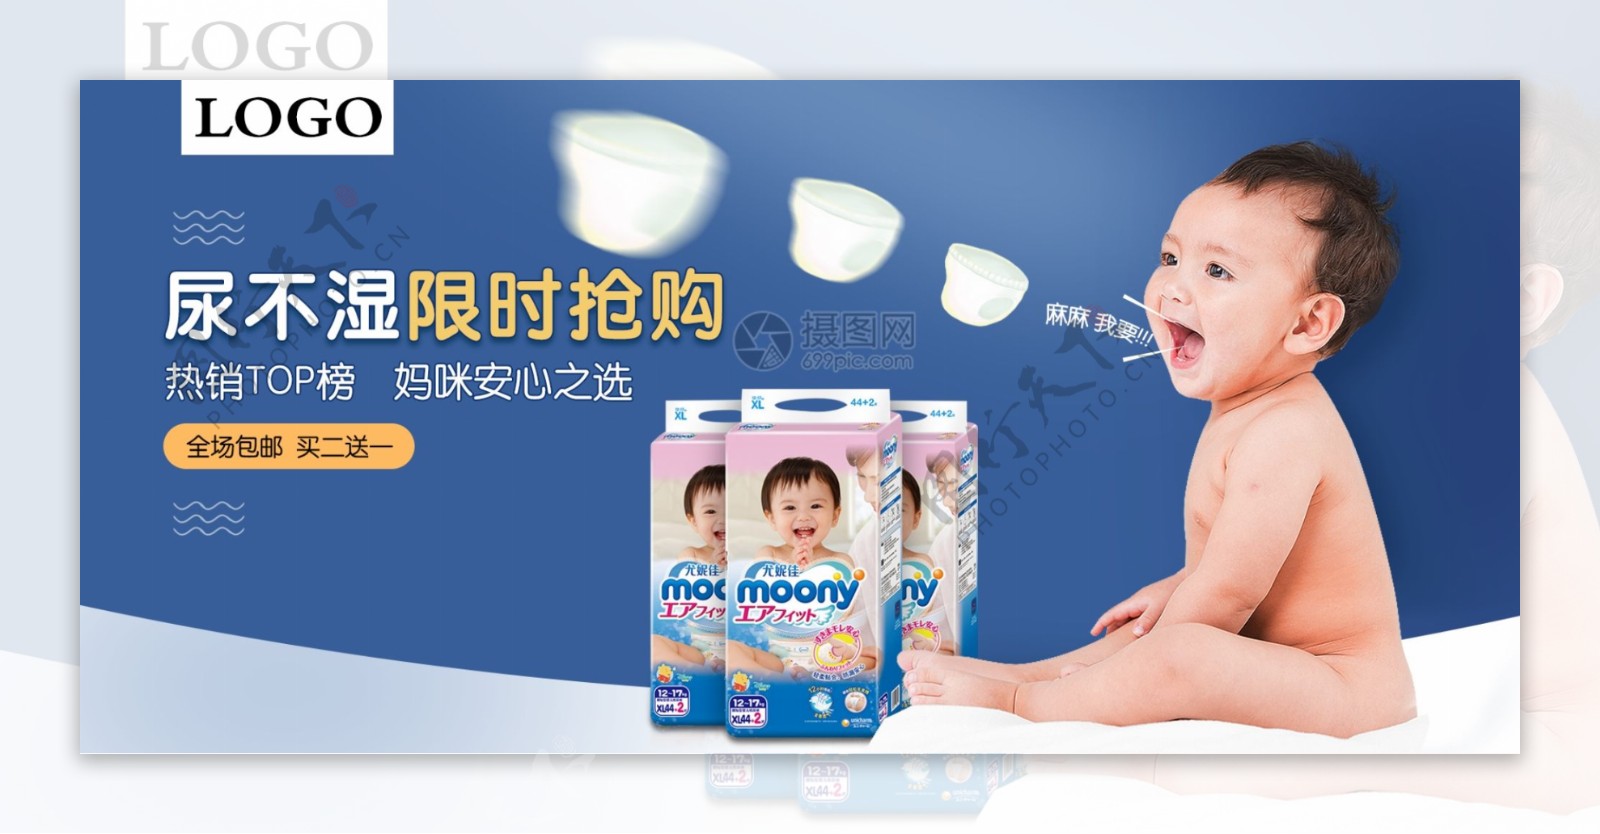 母婴用品纸尿裤促销电商banner